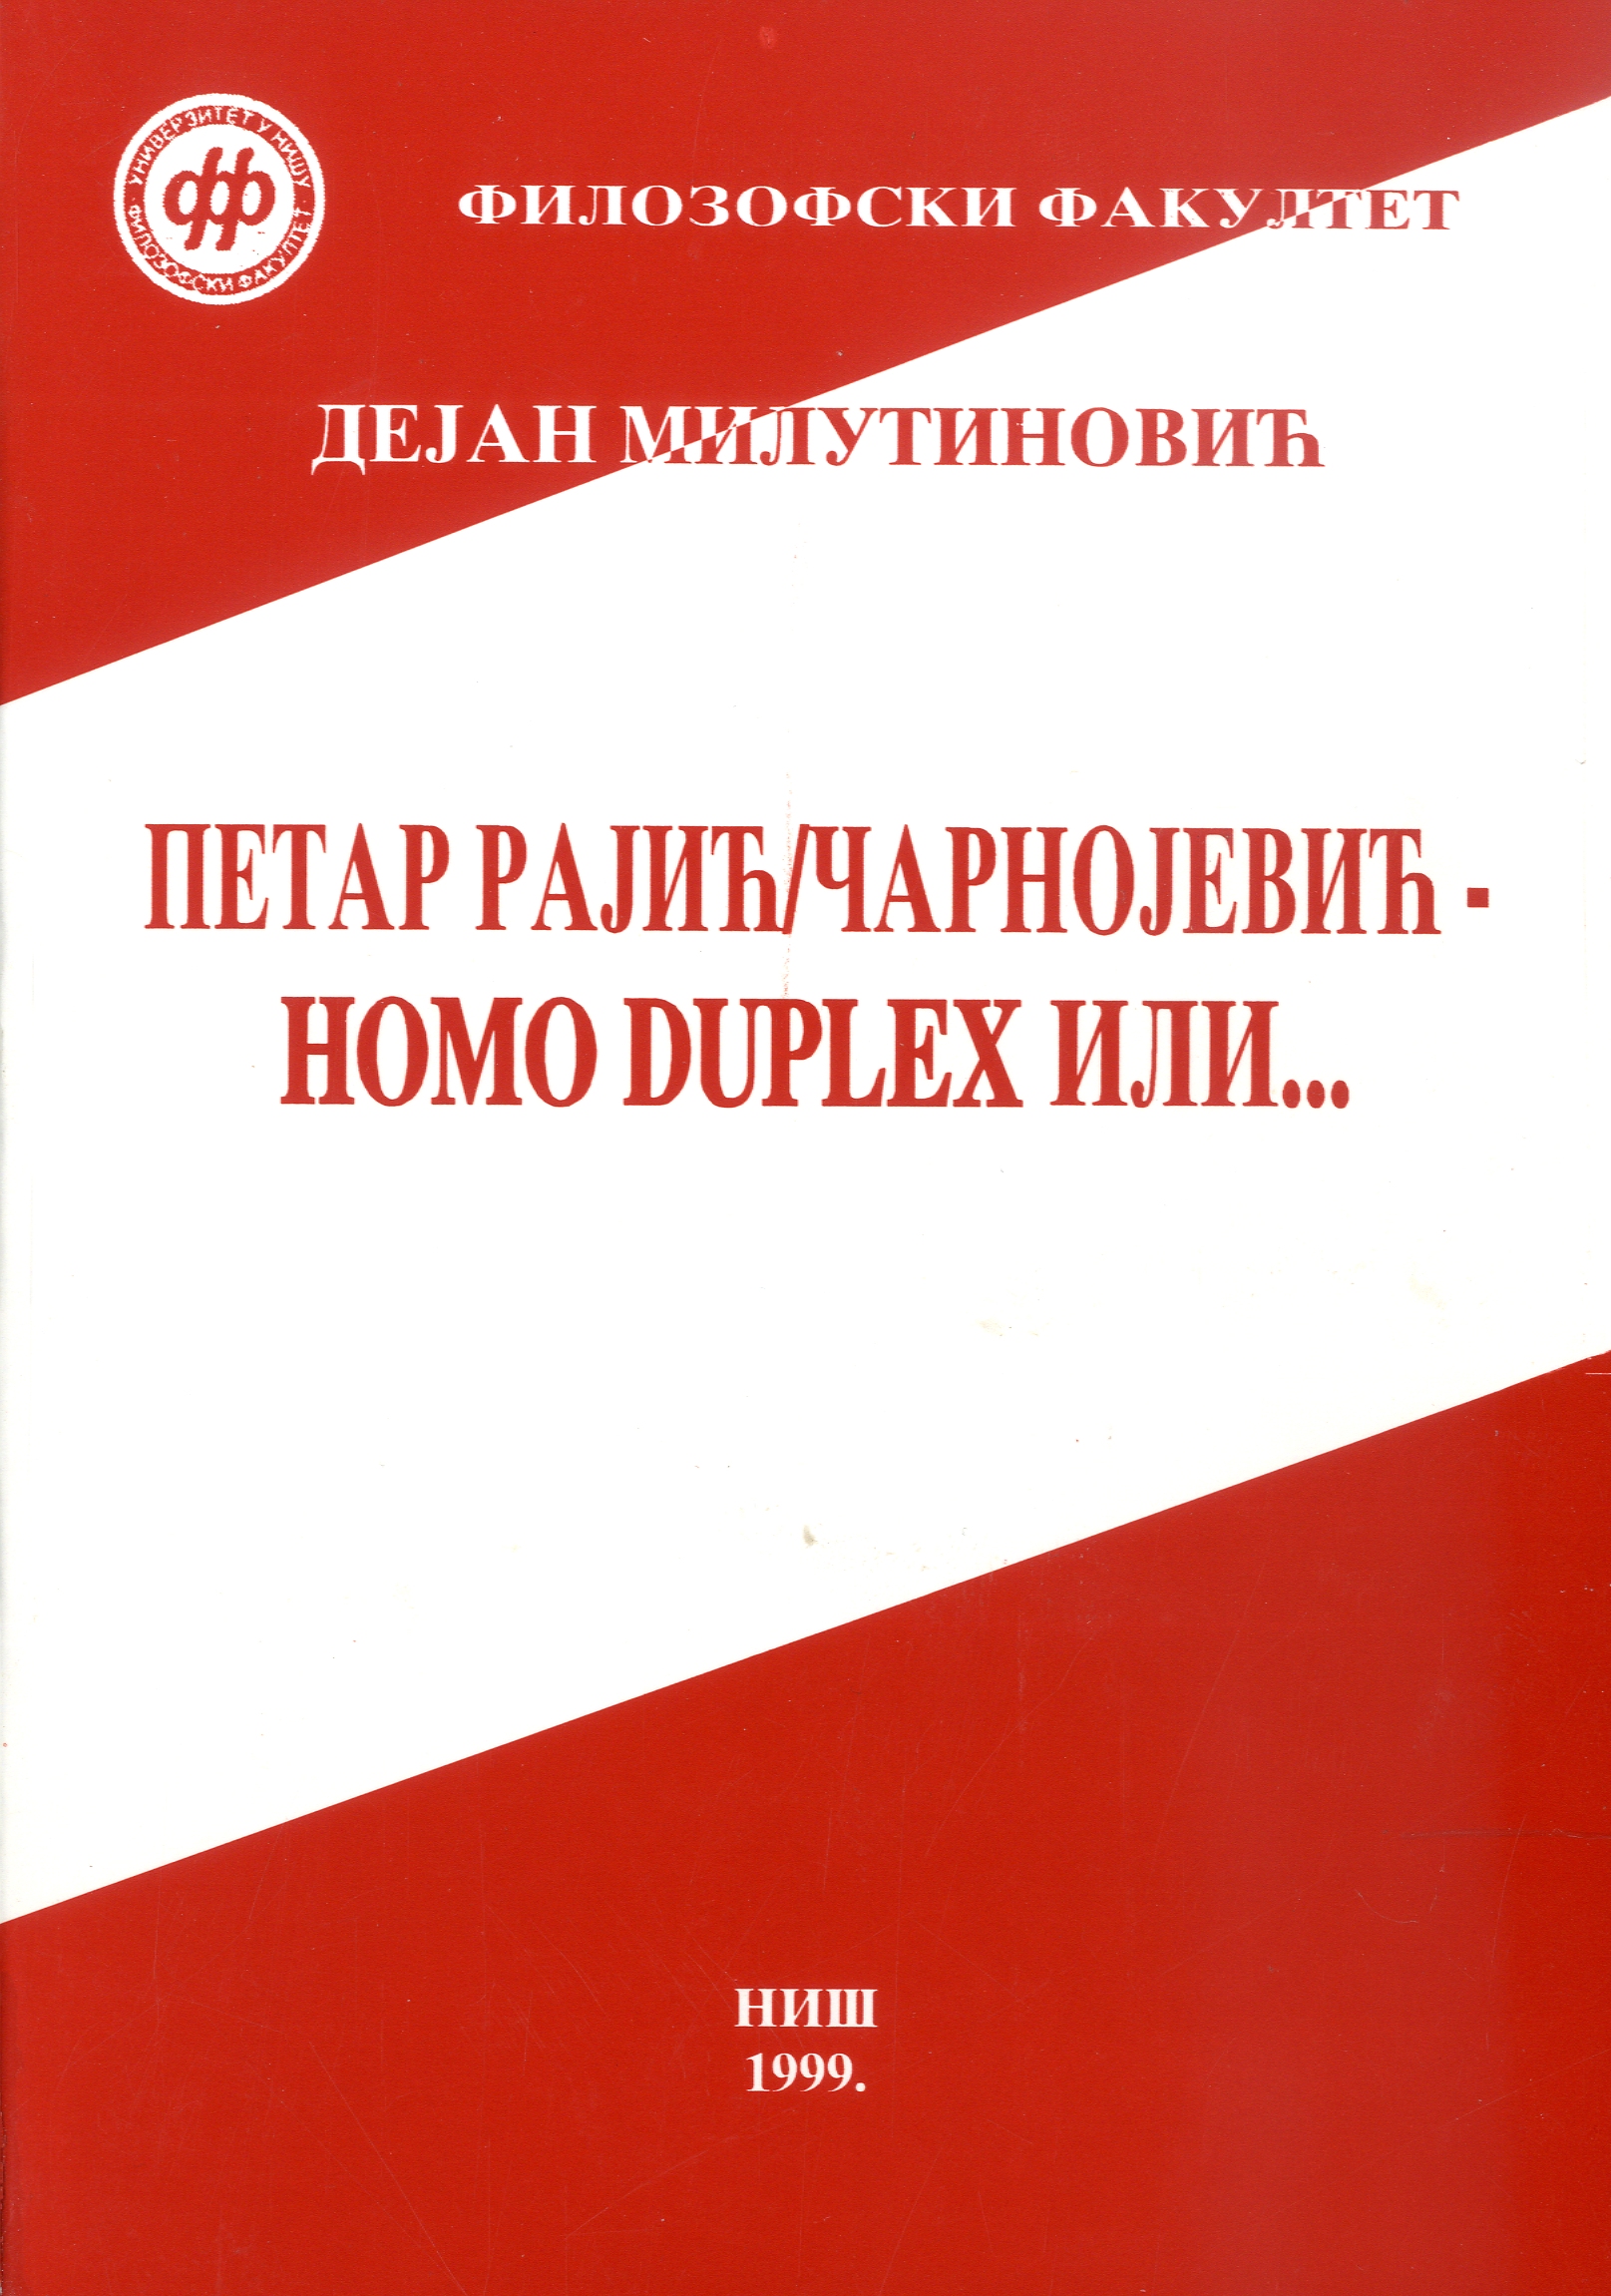 Петар Рајић / Чарнојевић - homo duplex или...